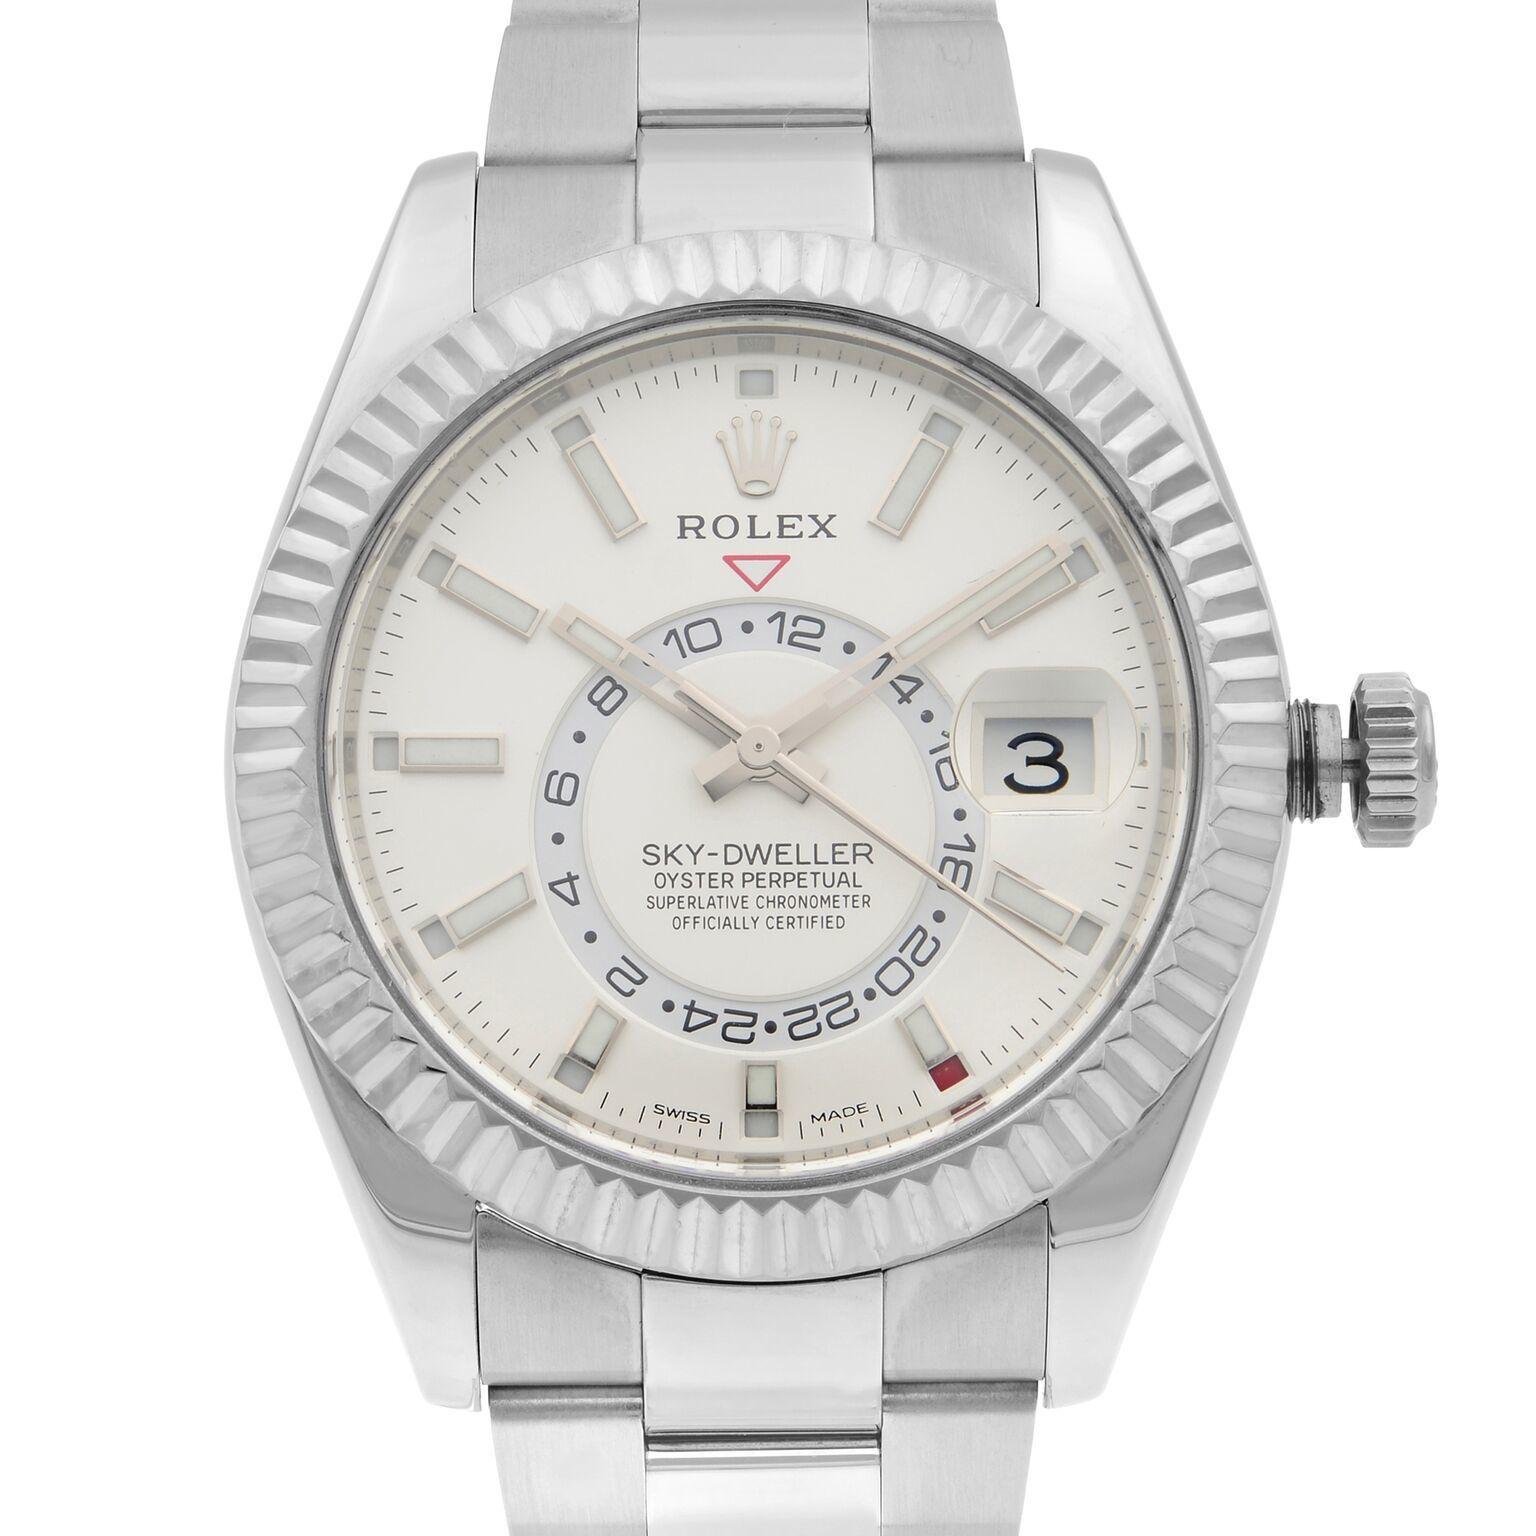 Pre-owned Rolex Sky-Dweller 42mm Edelstahl weißes Zifferblatt automatische Herren Oyster Uhr 326934. Dieser schöne Zeitmesser wird von einem mechanischen (automatischen) Uhrwerk angetrieben und verfügt über: Rundes Edelstahlgehäuse mit Oyster